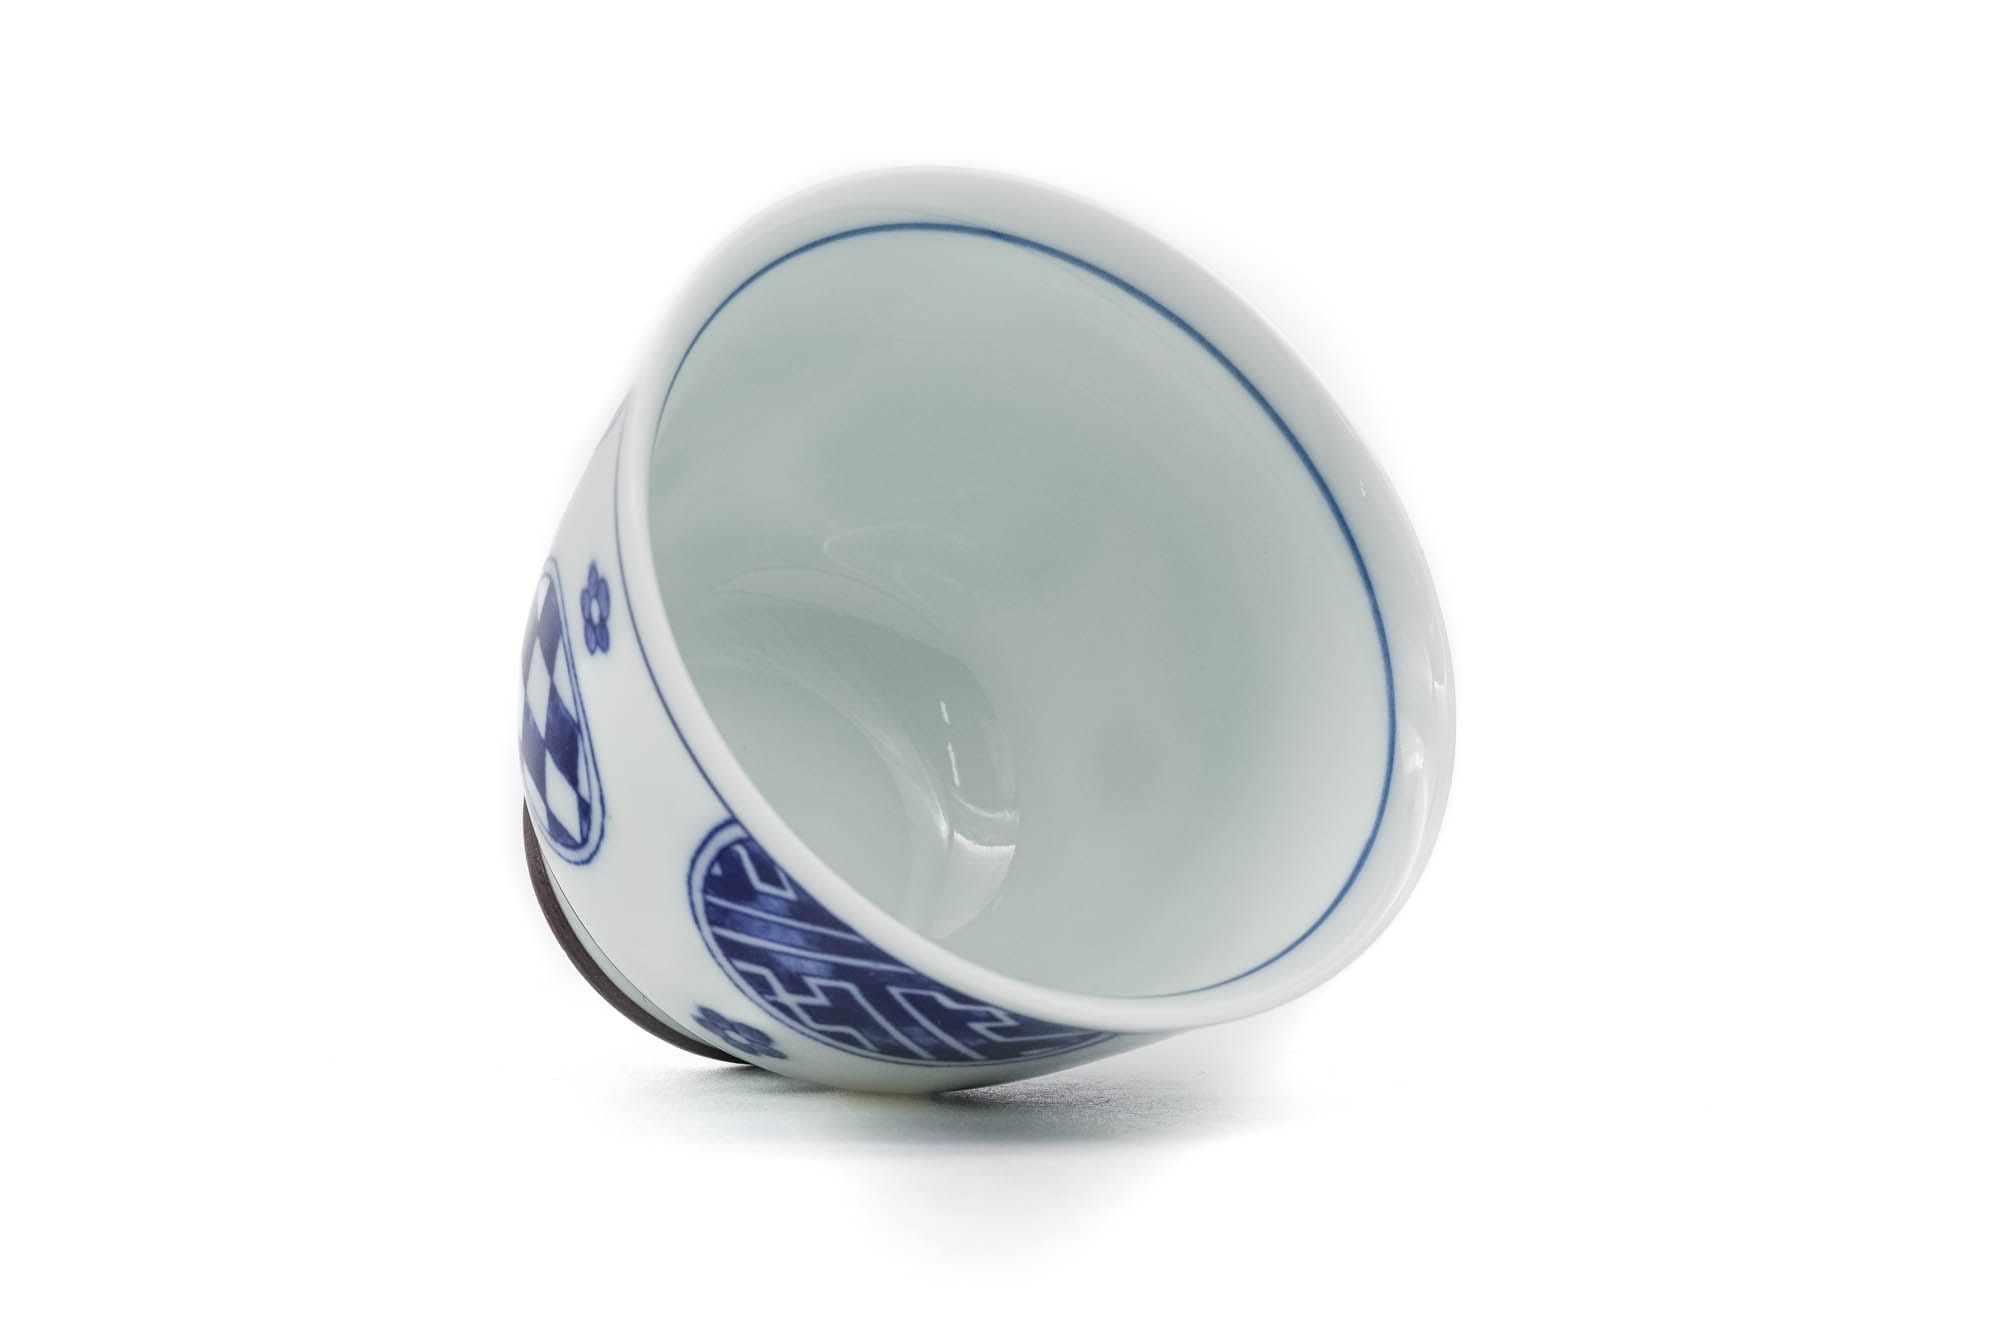 Japanese Teacup - Blue Circular Crests Porcelain Mino-yaki Yunomi - 70ml